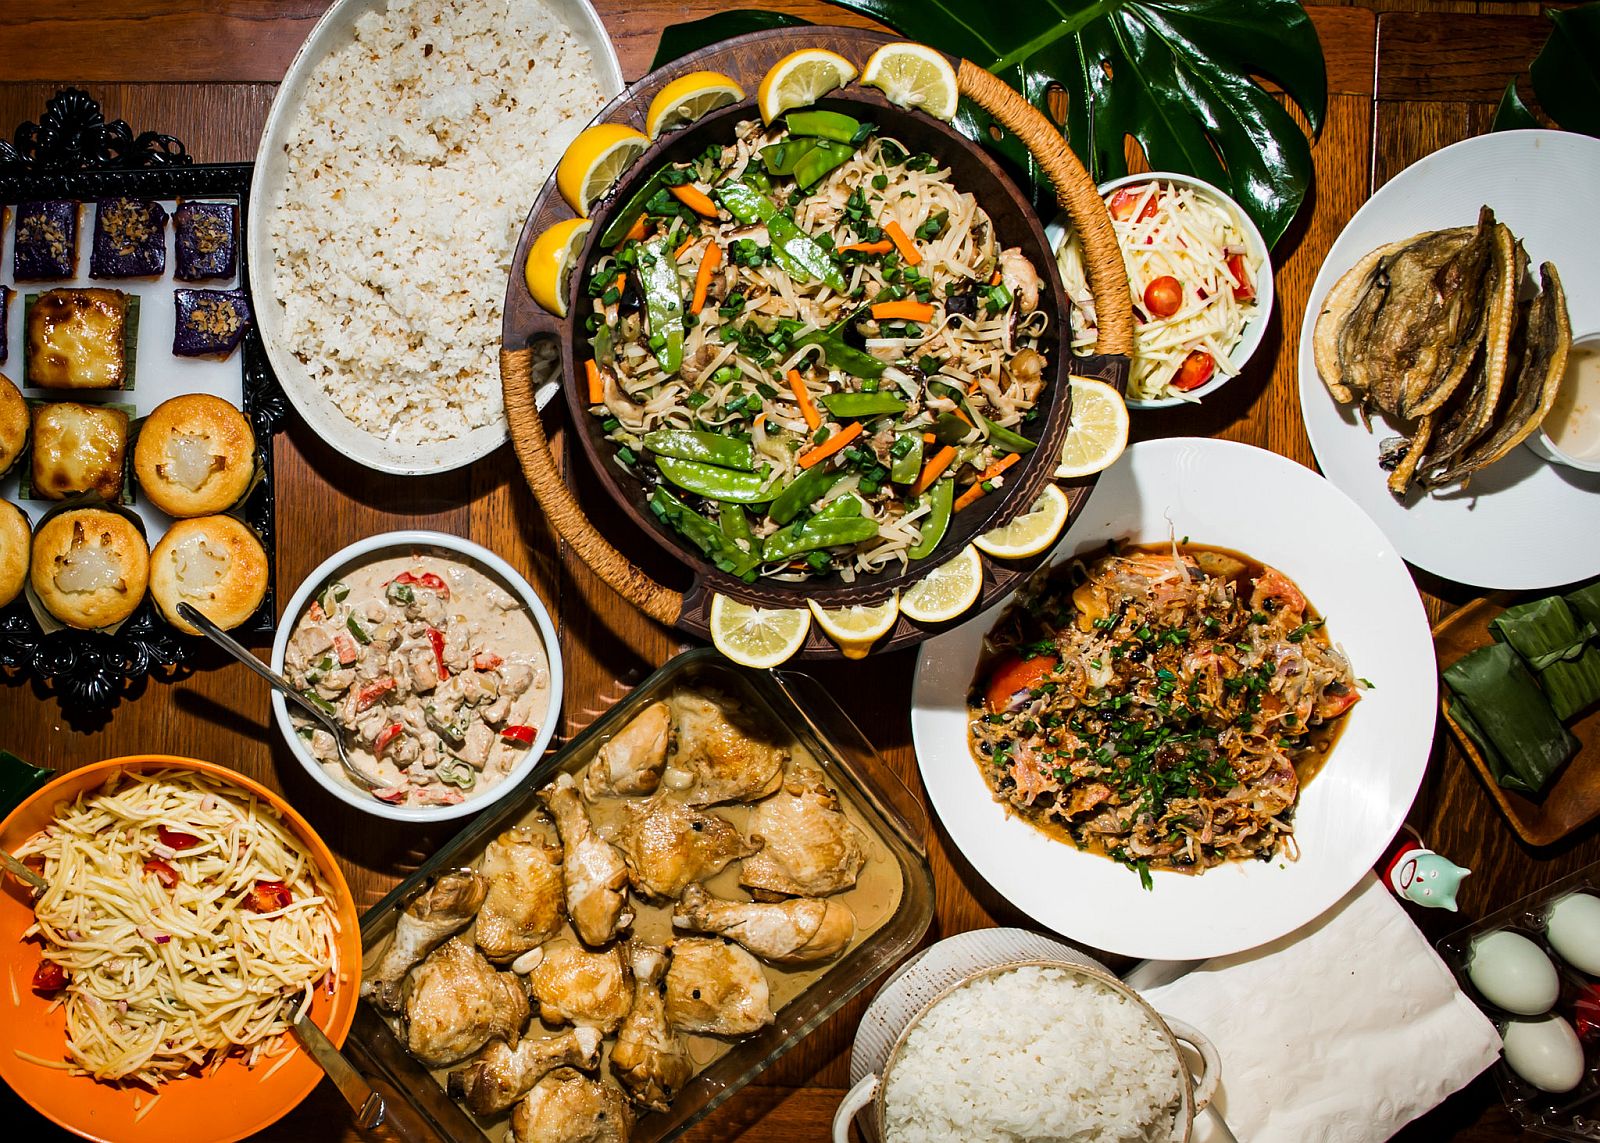 PHILIPPINEN - REISEN - LEITFADEN ZU - Leitfaden zur lokalen Küche der Philippinen